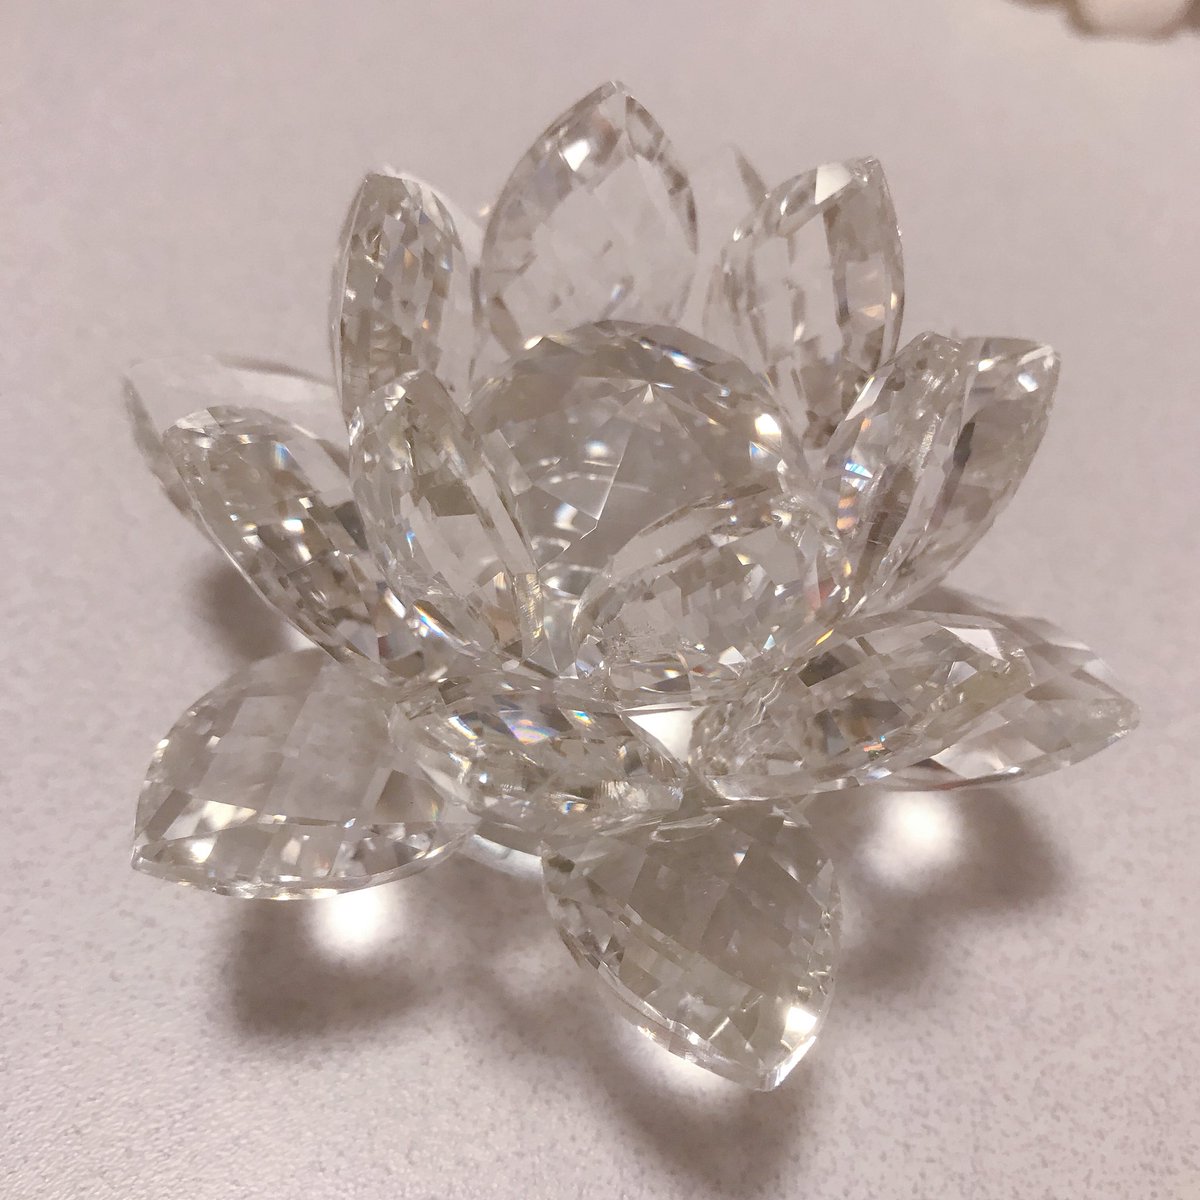 ほびィ Twitterren 買えました 幻の銀水晶ペーパーウェイト 美しすぎて涙が出ました ずっと銀水晶モチーフのものが欲しいと思ってたけど これがベストです どこに置いても美しい 大切にしよう セーラームーンストア 銀水晶